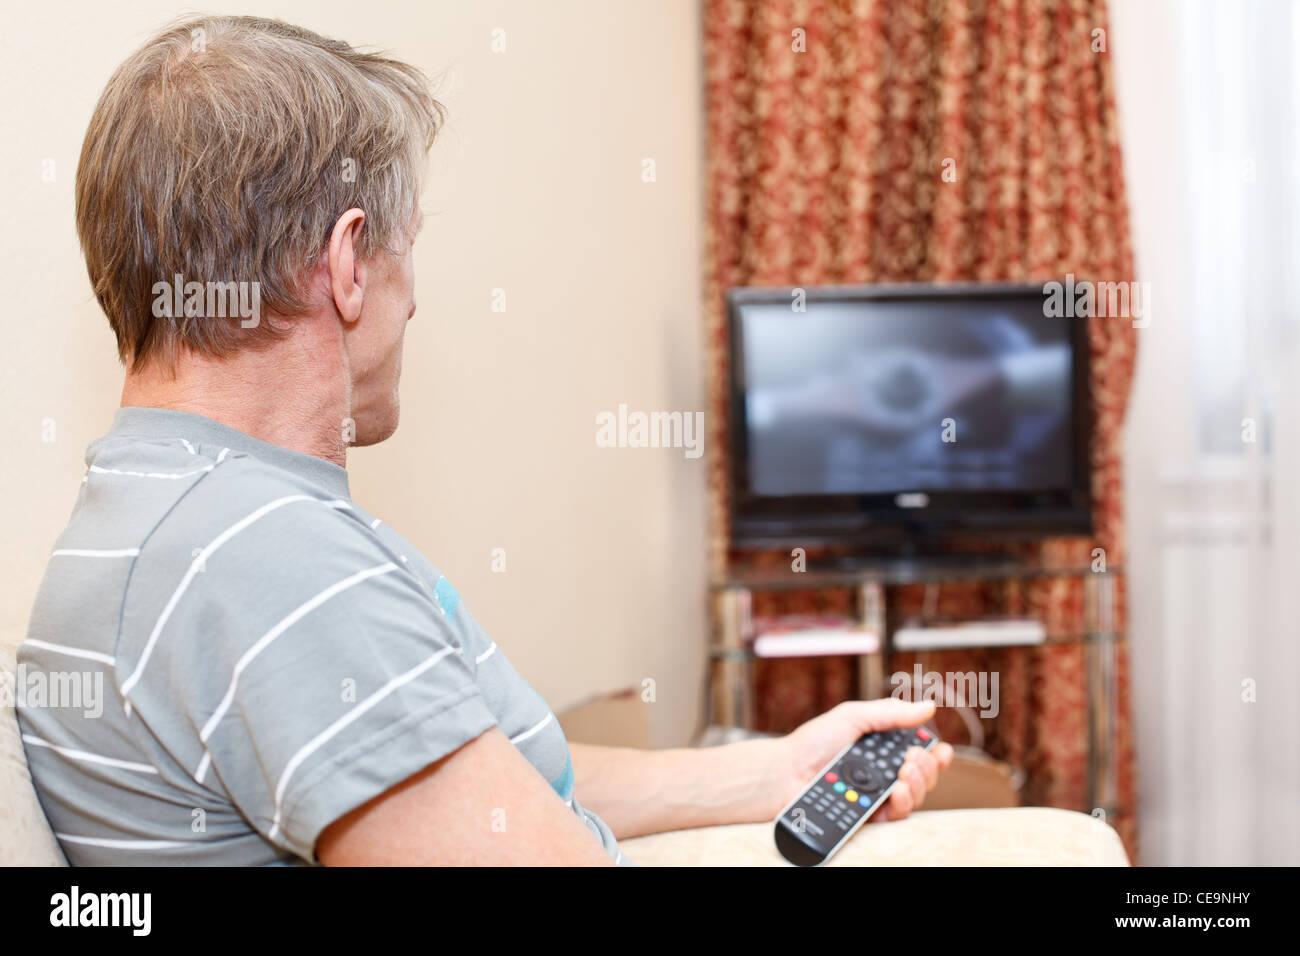 Ältere Mann mit Fernbedienung auf Couch sitzen und TV-Gerät betrachten Stockfoto